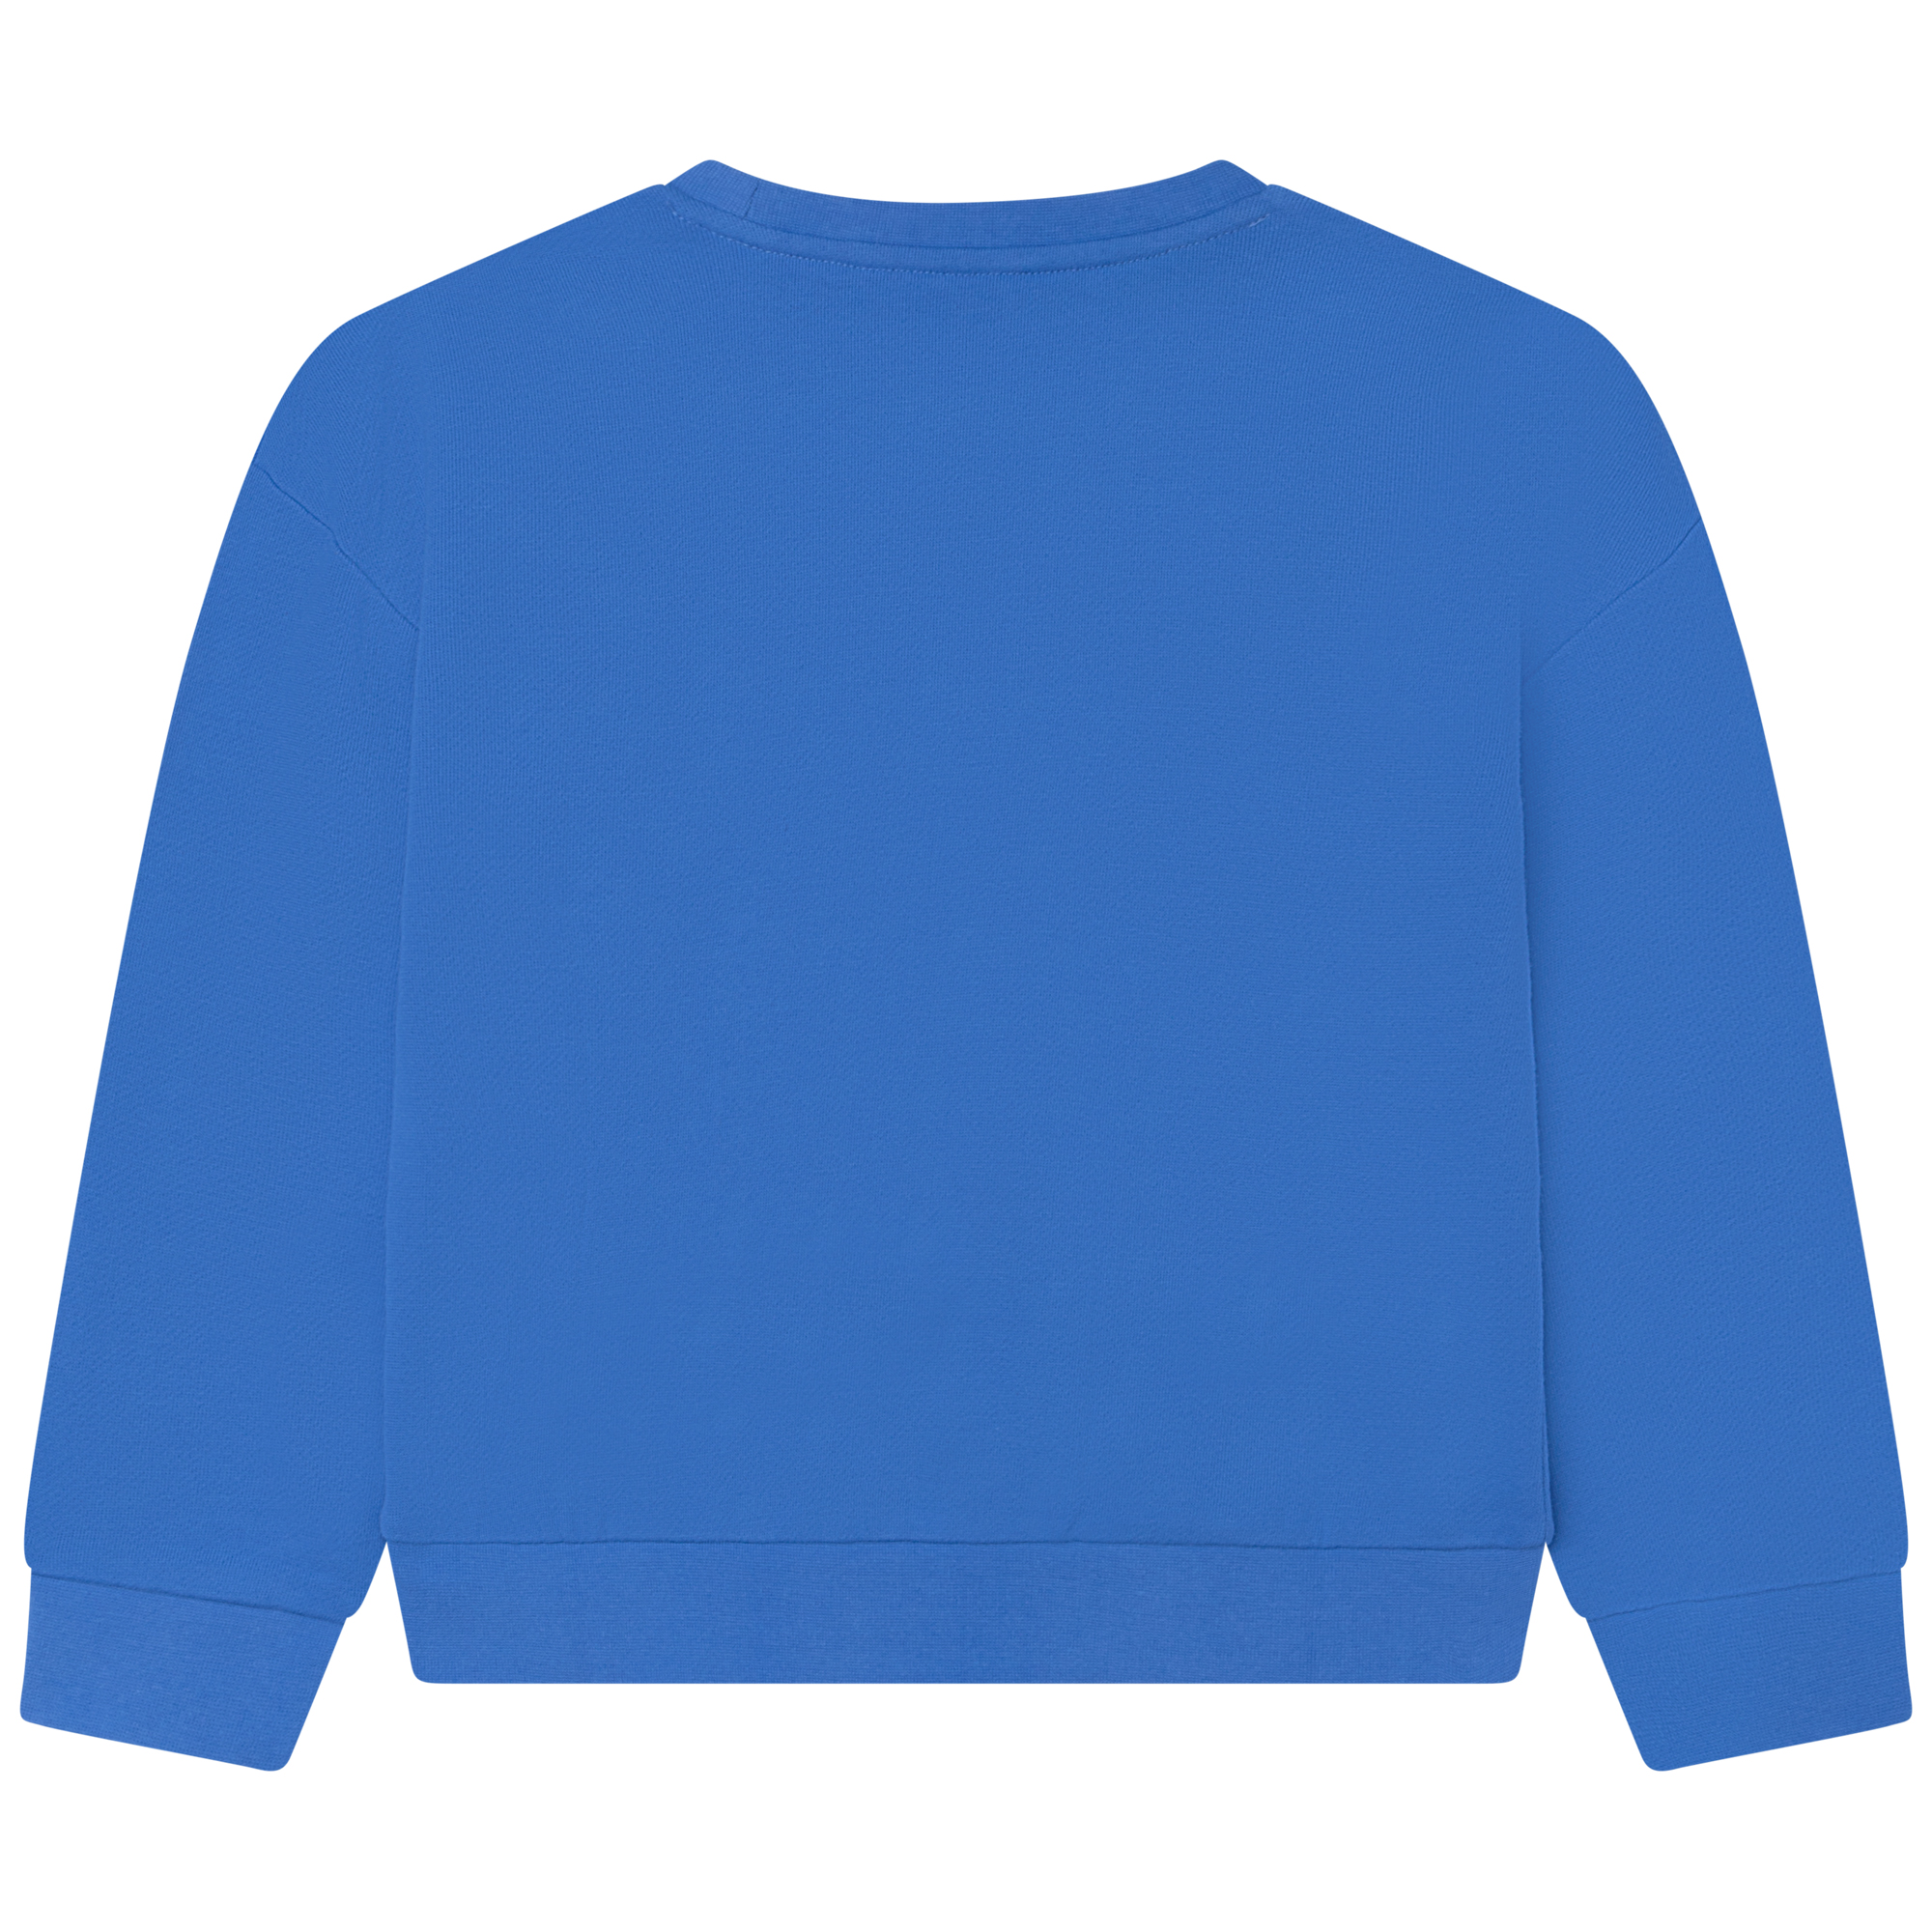 Sweater van fleece MICHAEL KORS Voor